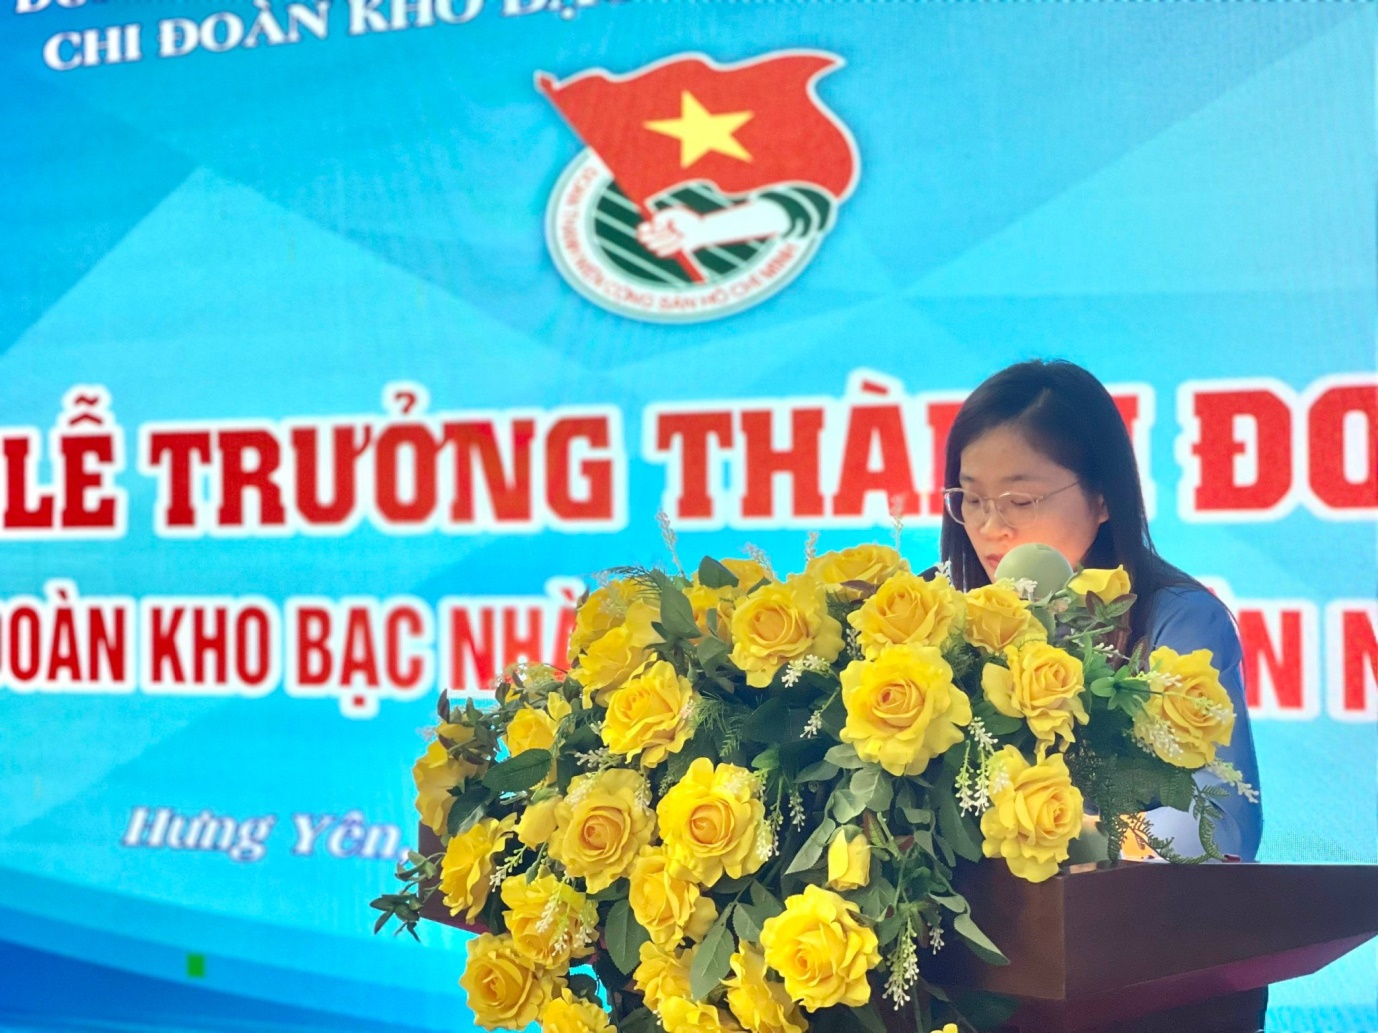 Đồng chí Vũ Thị Bích Phương đại diện cho các đoàn viên trẻ  đang sinh hoạt tại Chi đoàn phát biểu tại buổi Lễ